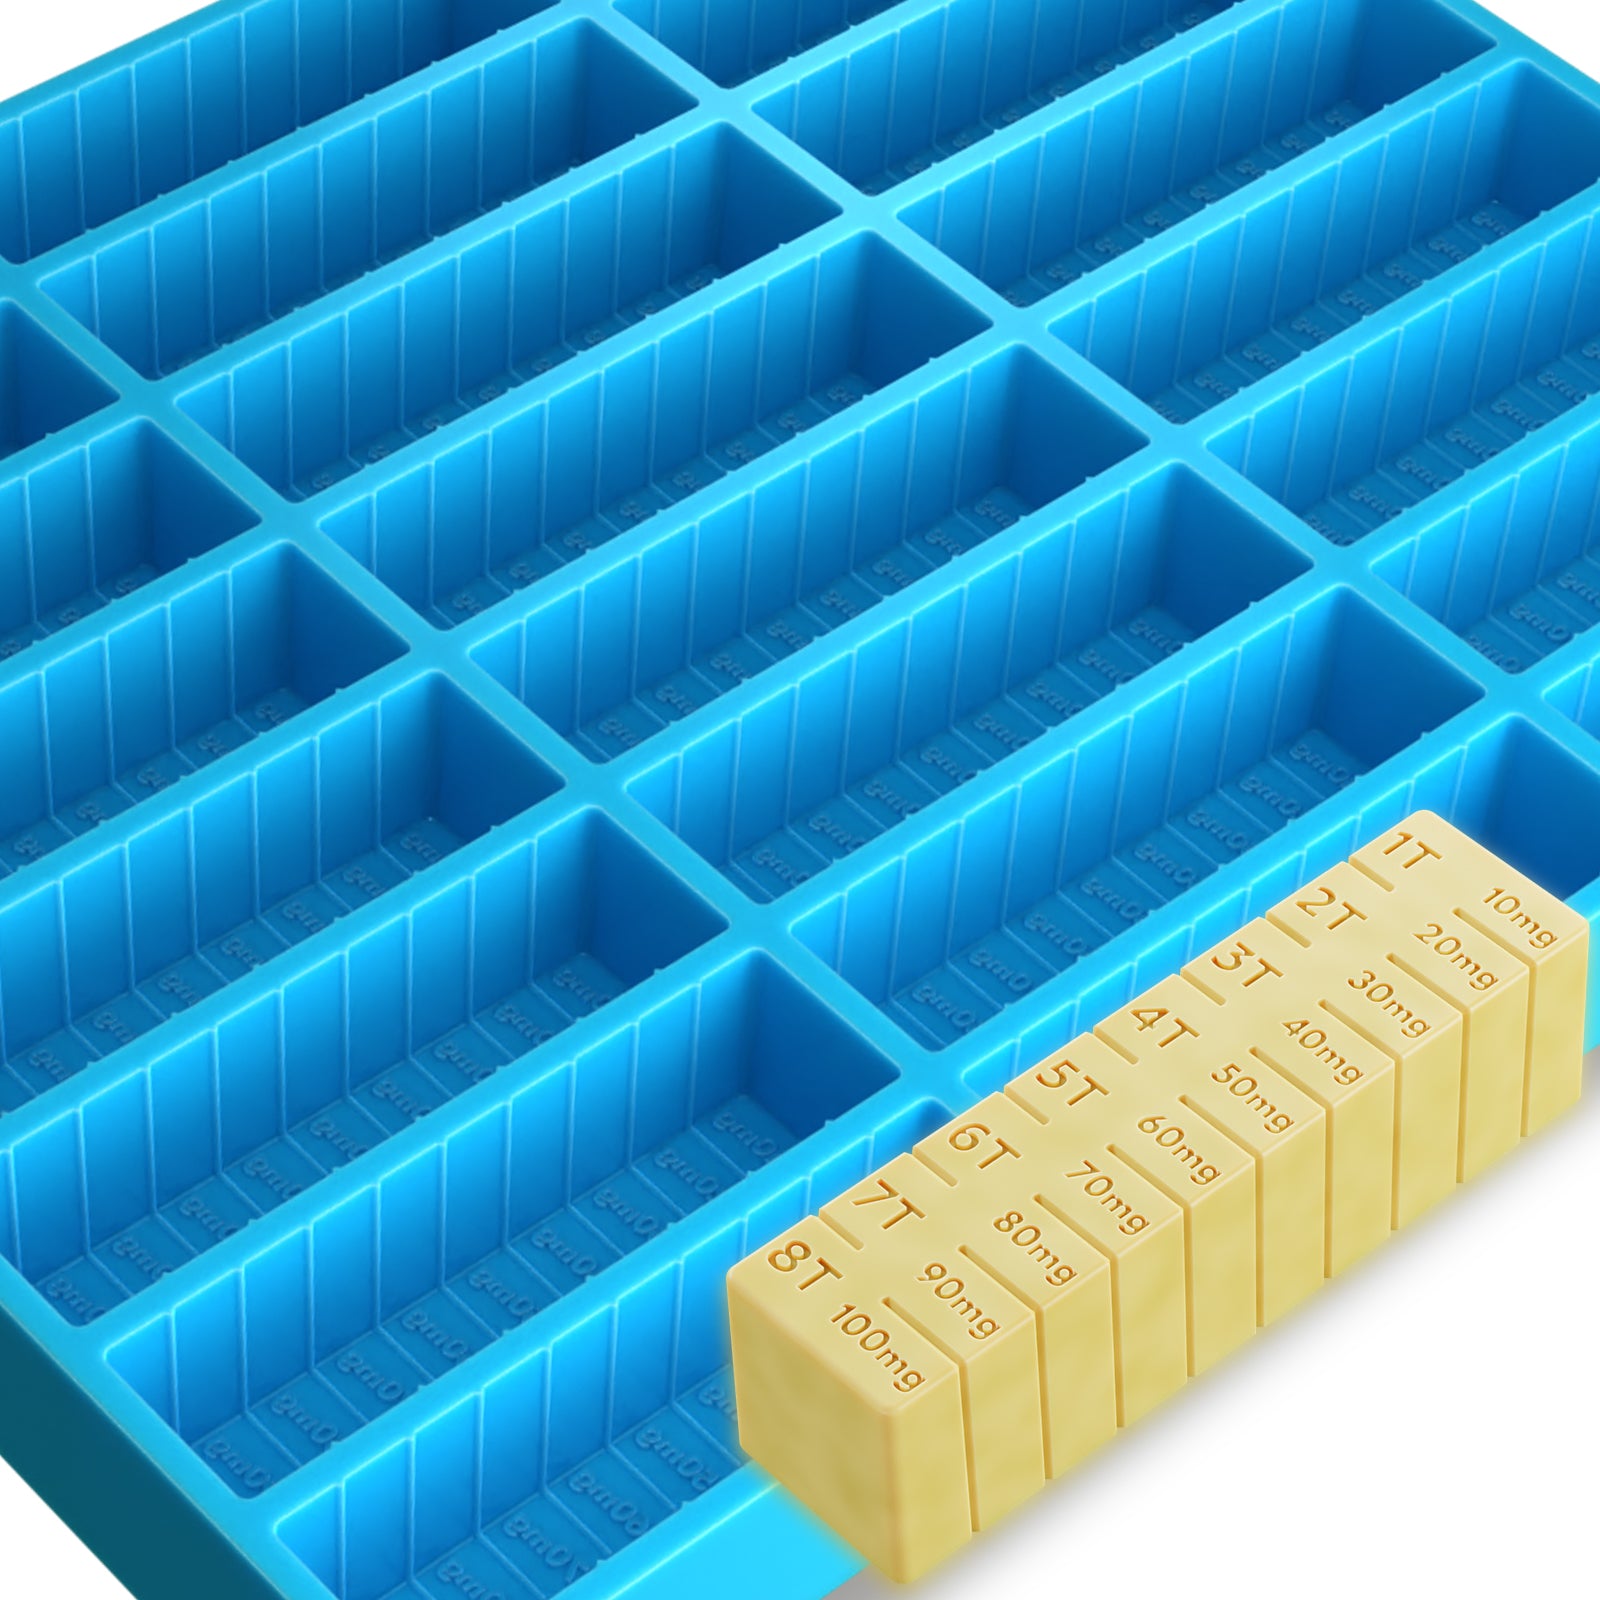 Vikakiooze Silicone Molds Butter Mold Tray with Lid Storage The Silicone Butter Molds with 4 Large Storage, Adult Unisex, Size: One size, Blue